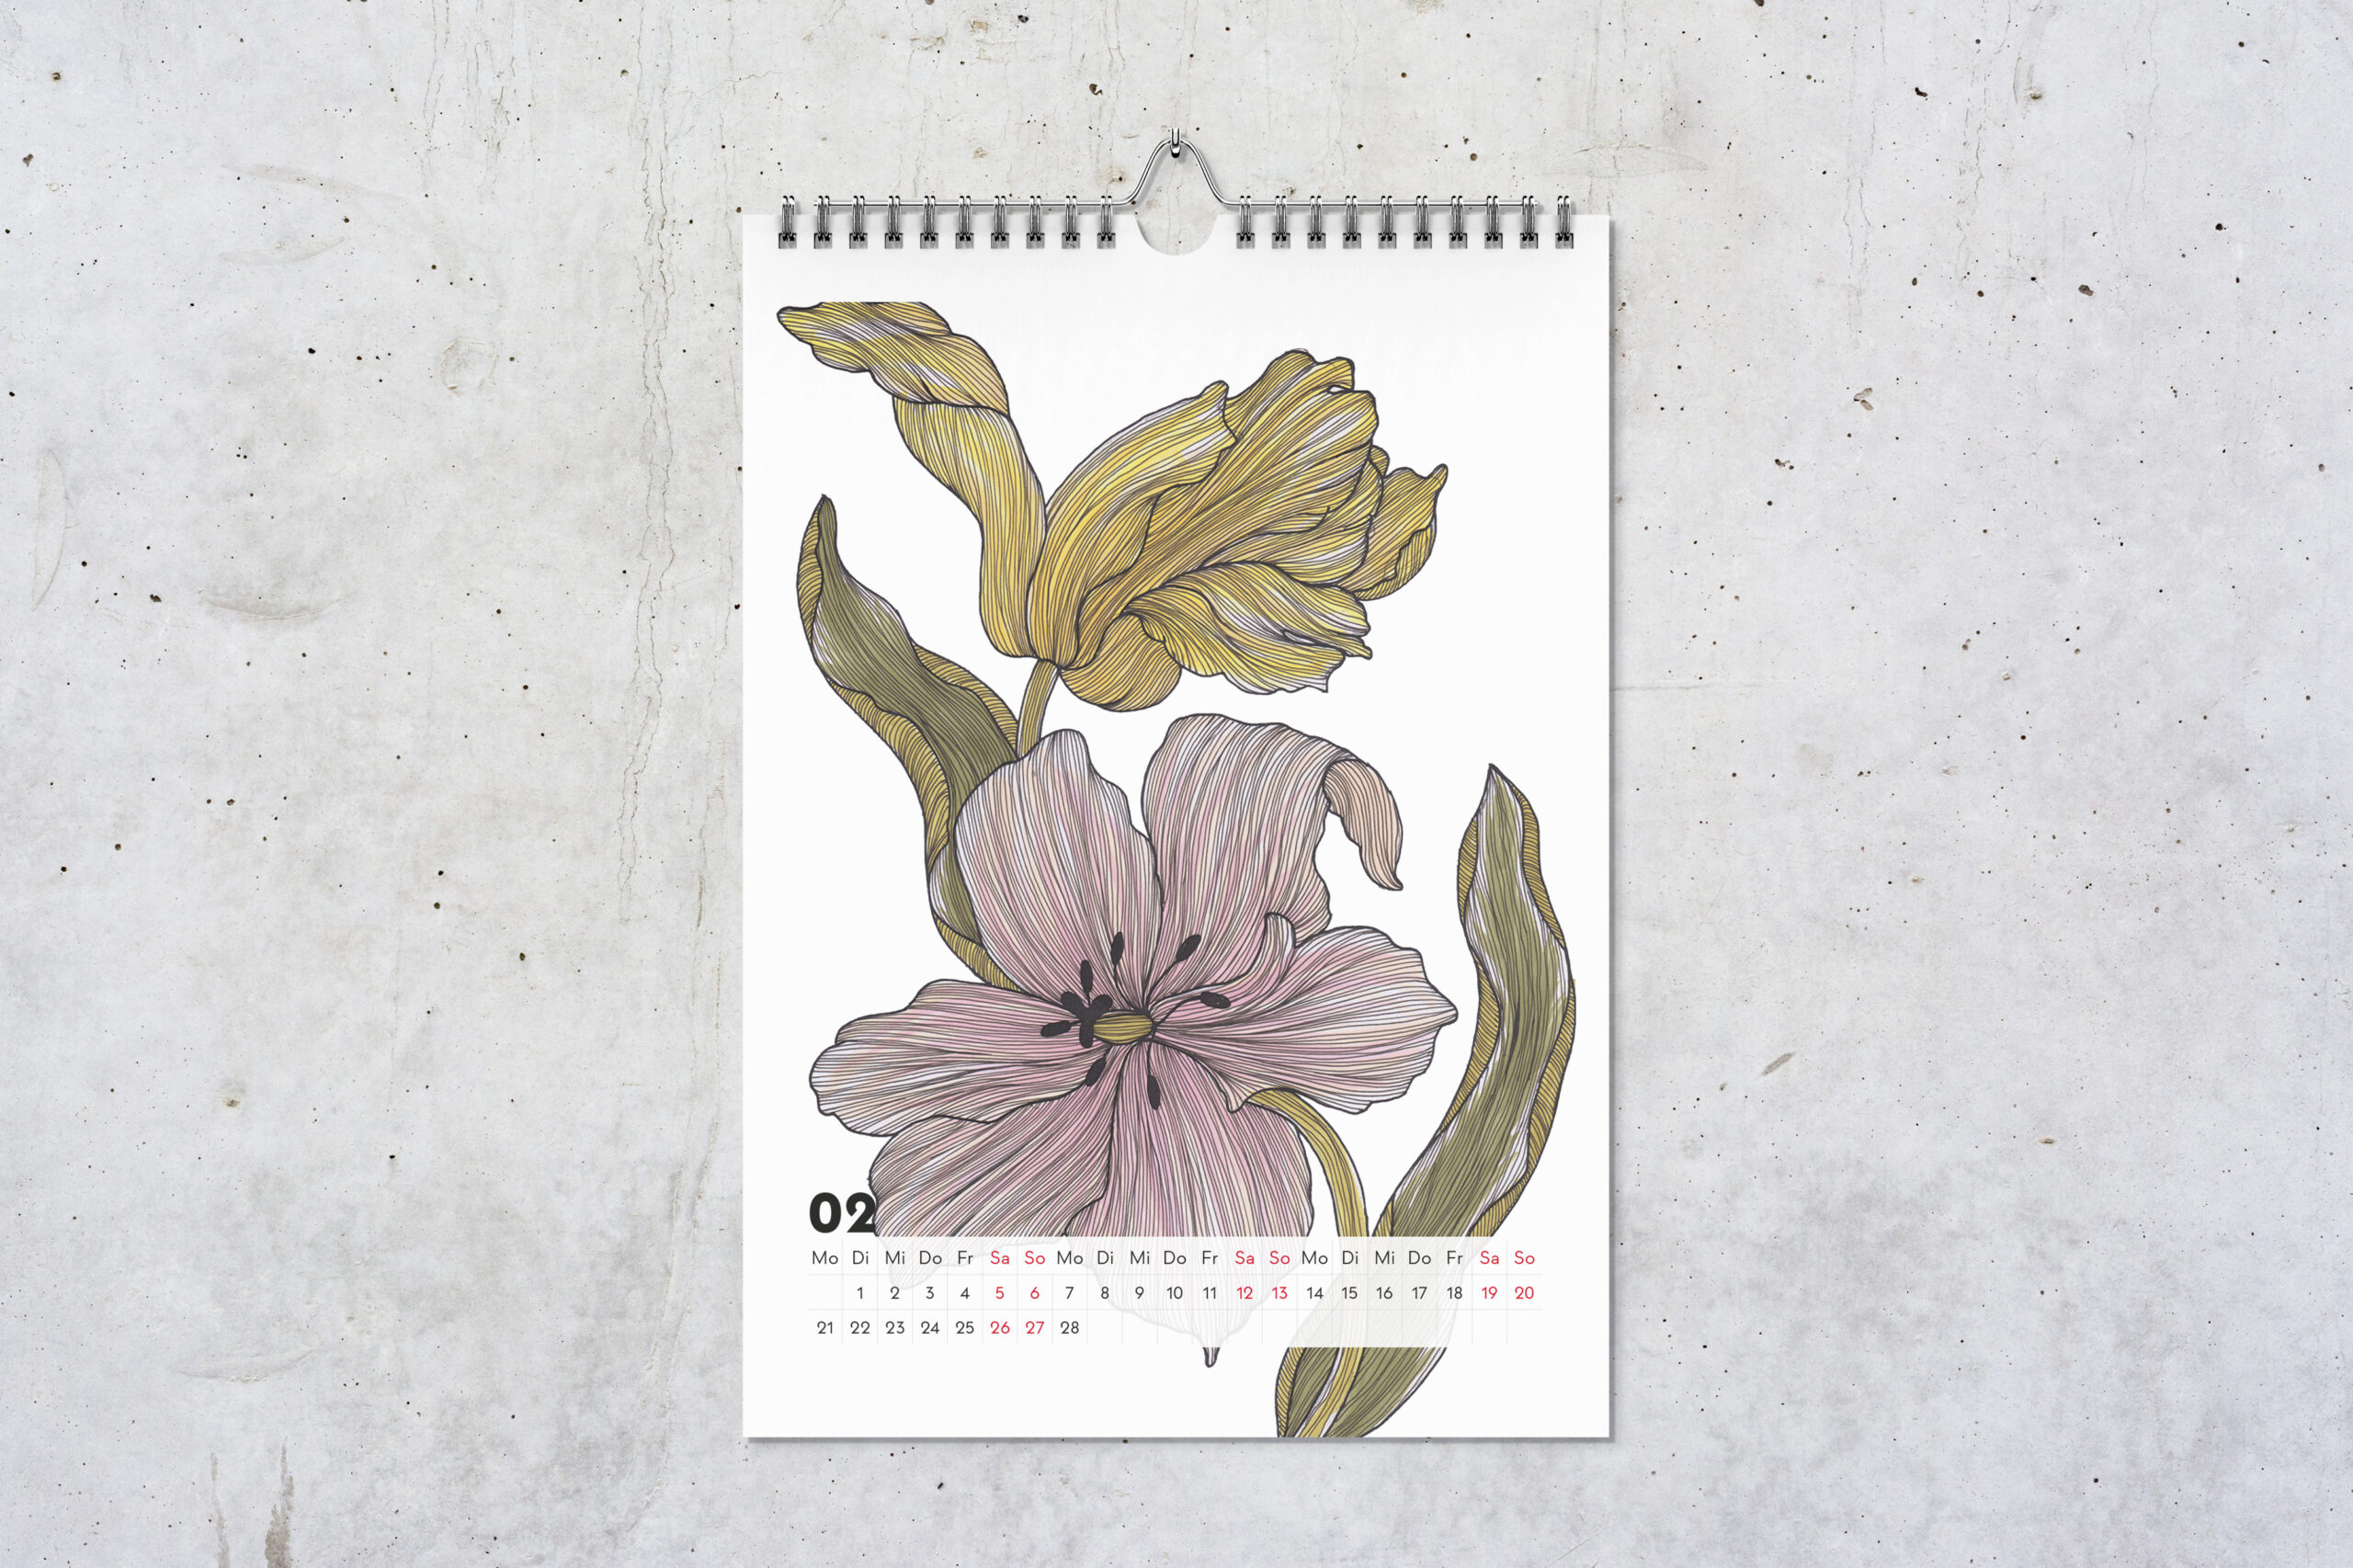 Kalenderblatt für Februar, mit Zeichnungen von einer pinken Tulpe vorne und einer gelben Tulpe hinten.